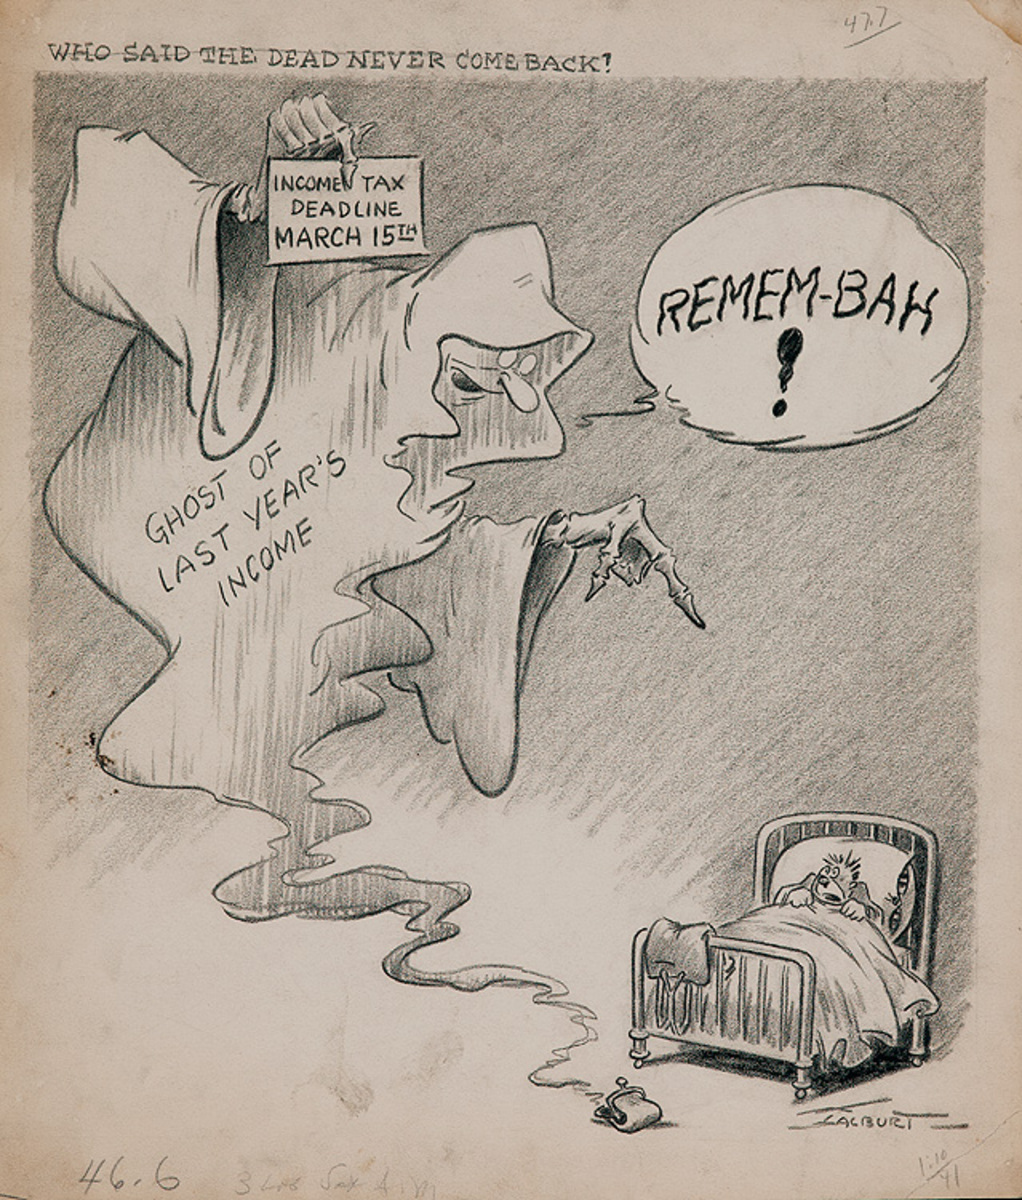 Original Depression Era Political Cartoon Artwork Remem-bah! Who Said the Dead Never Come Back